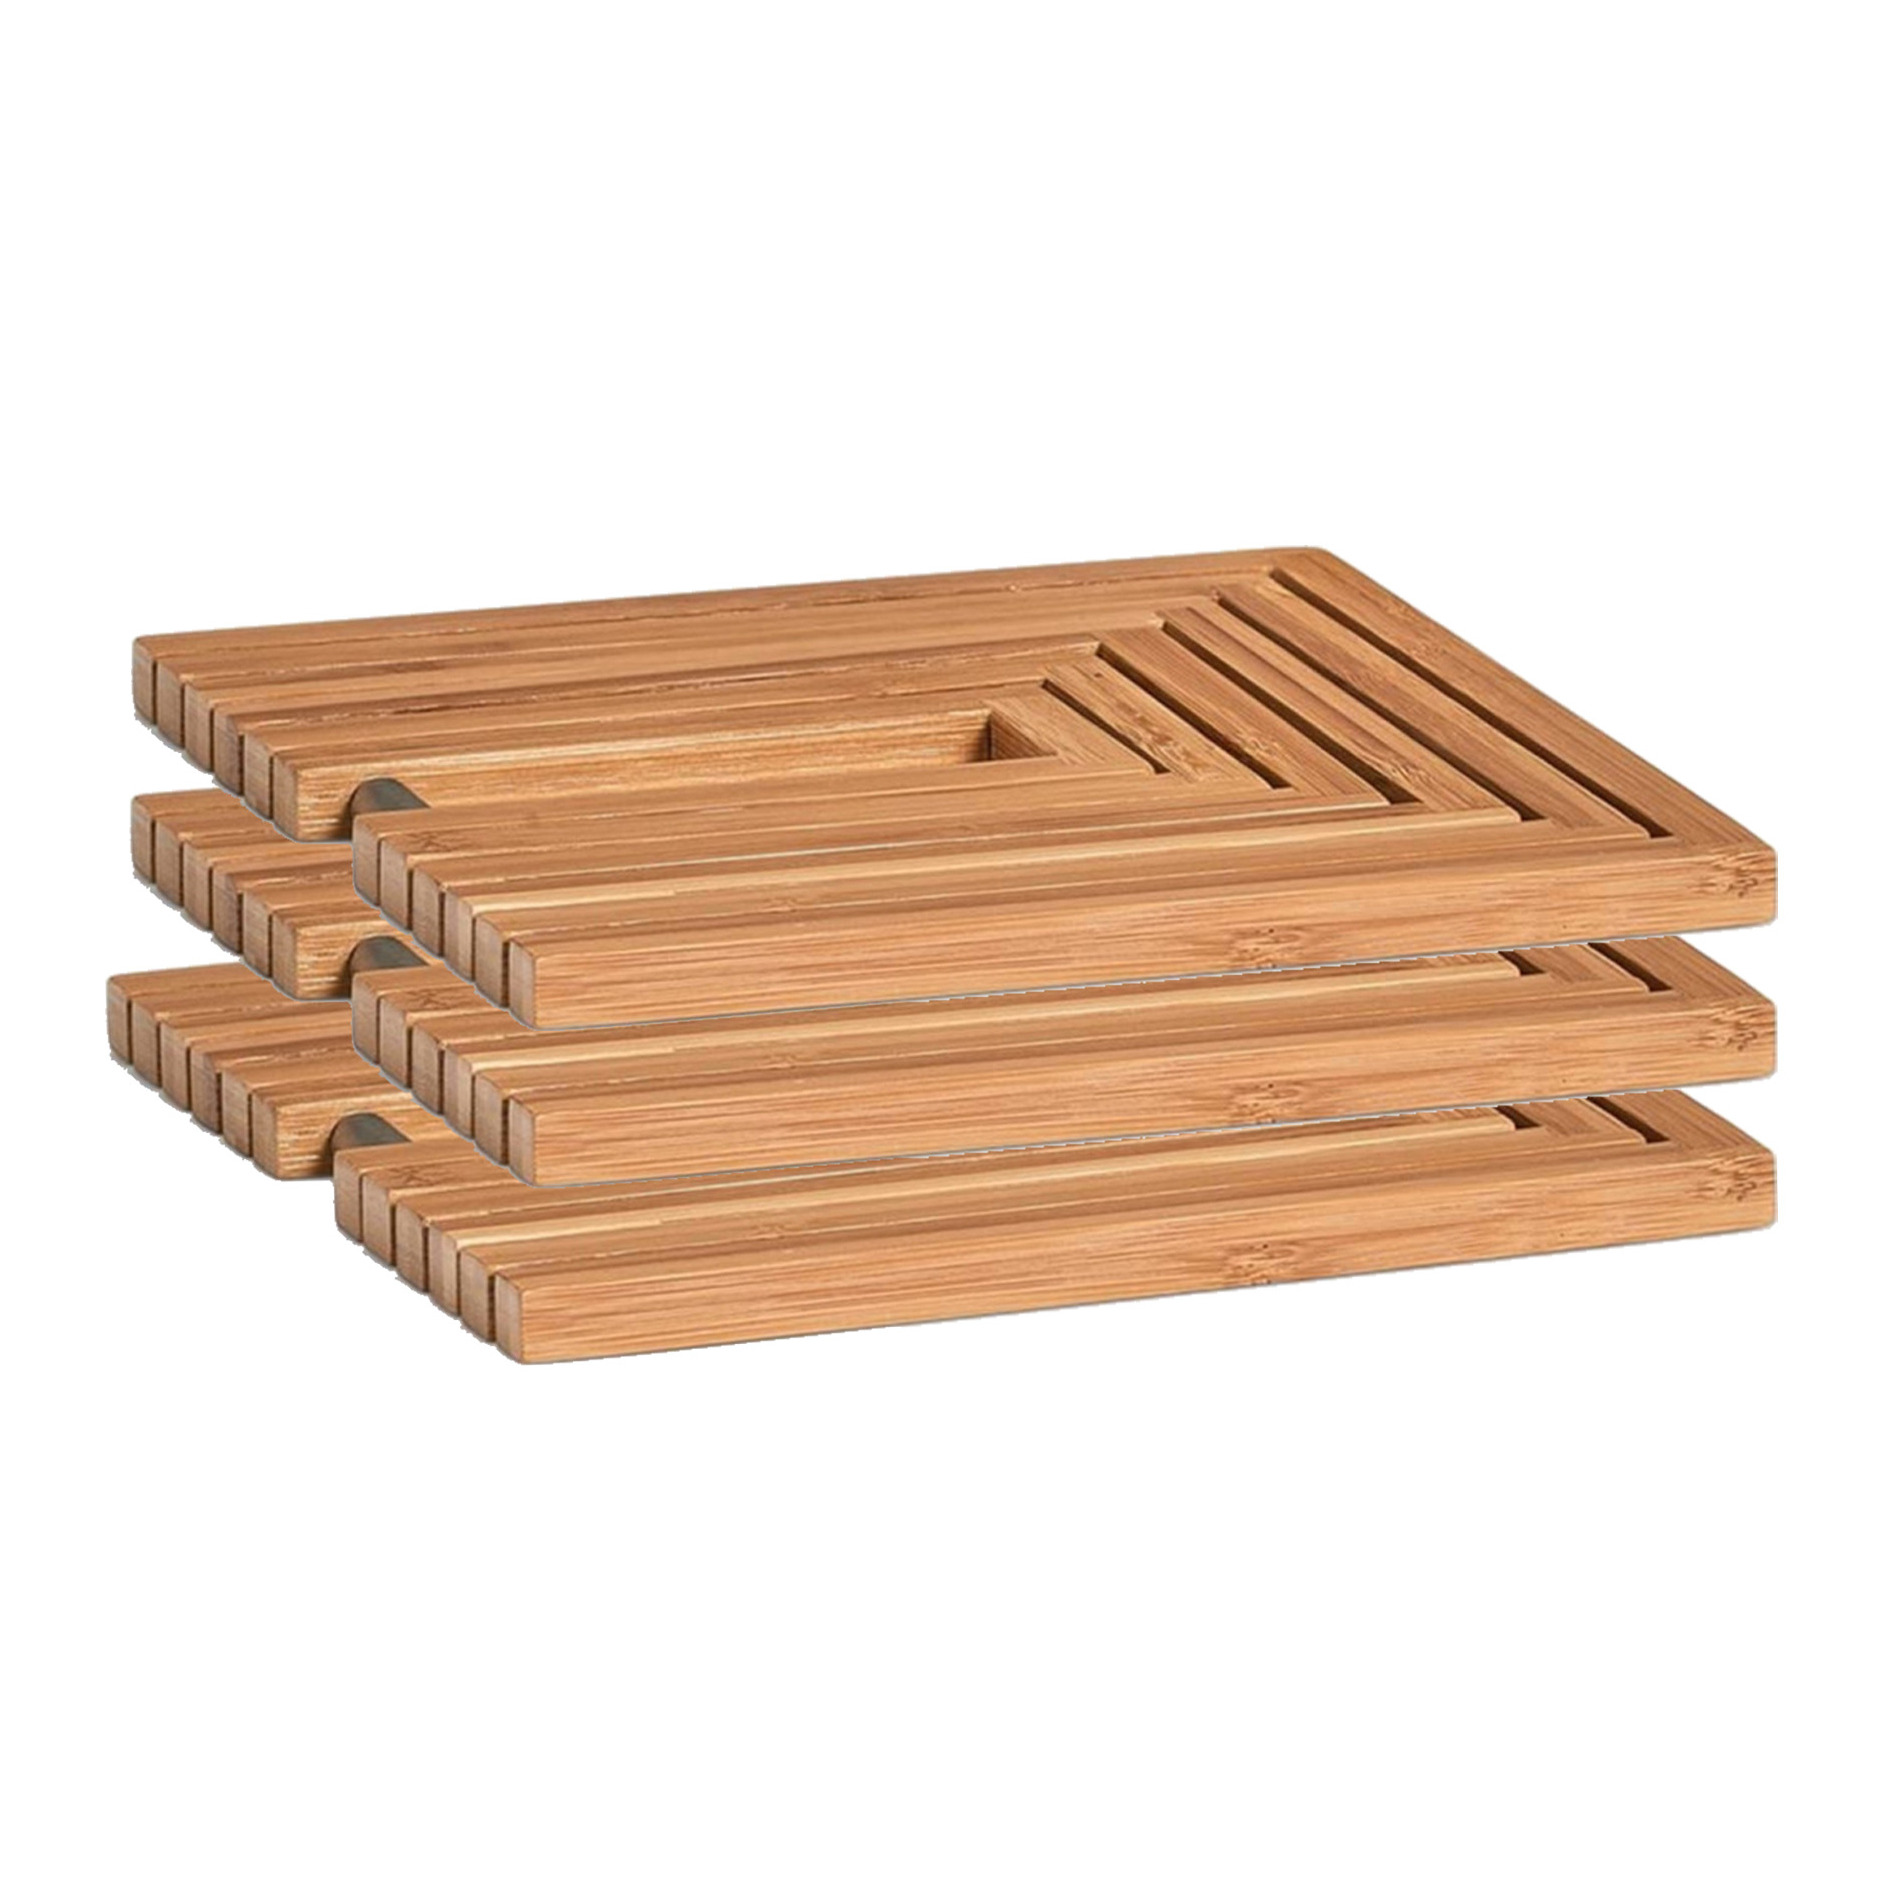 3x Bamboe houten pannenonderzetters uitklapbaar 19-34 x 19 cm